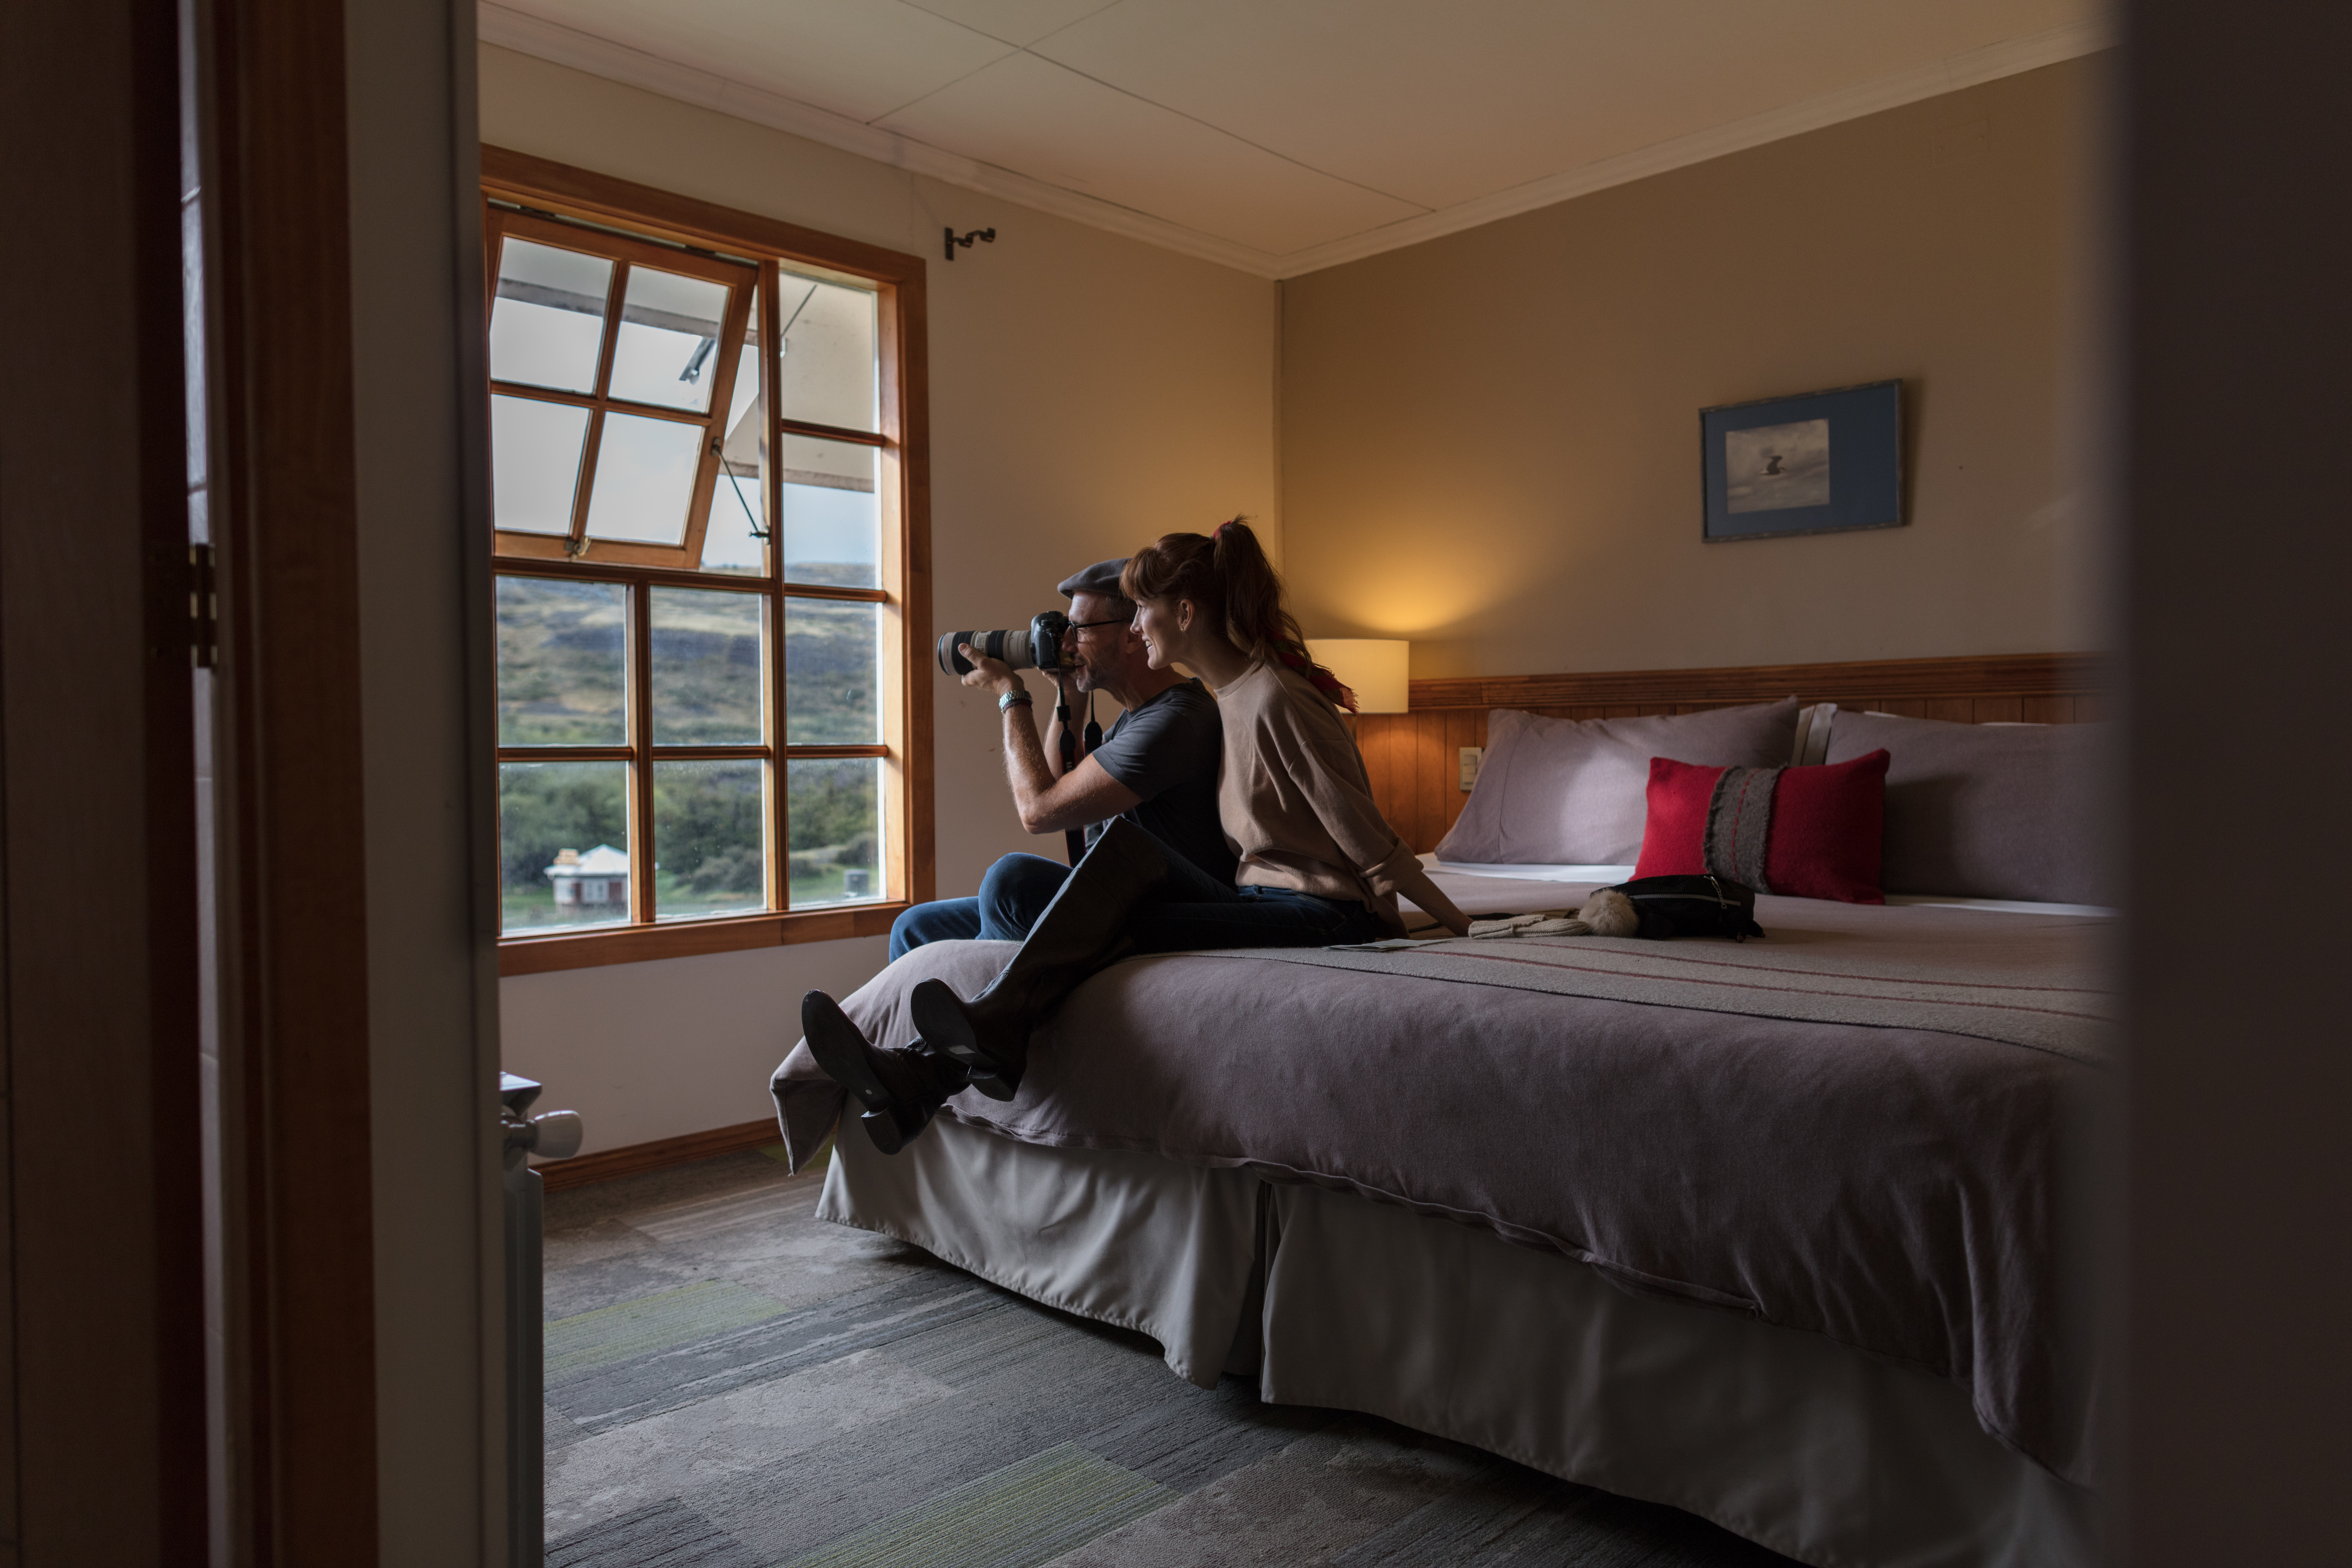 La experiencia hotel estancia: Descubre nuestras habitaciones